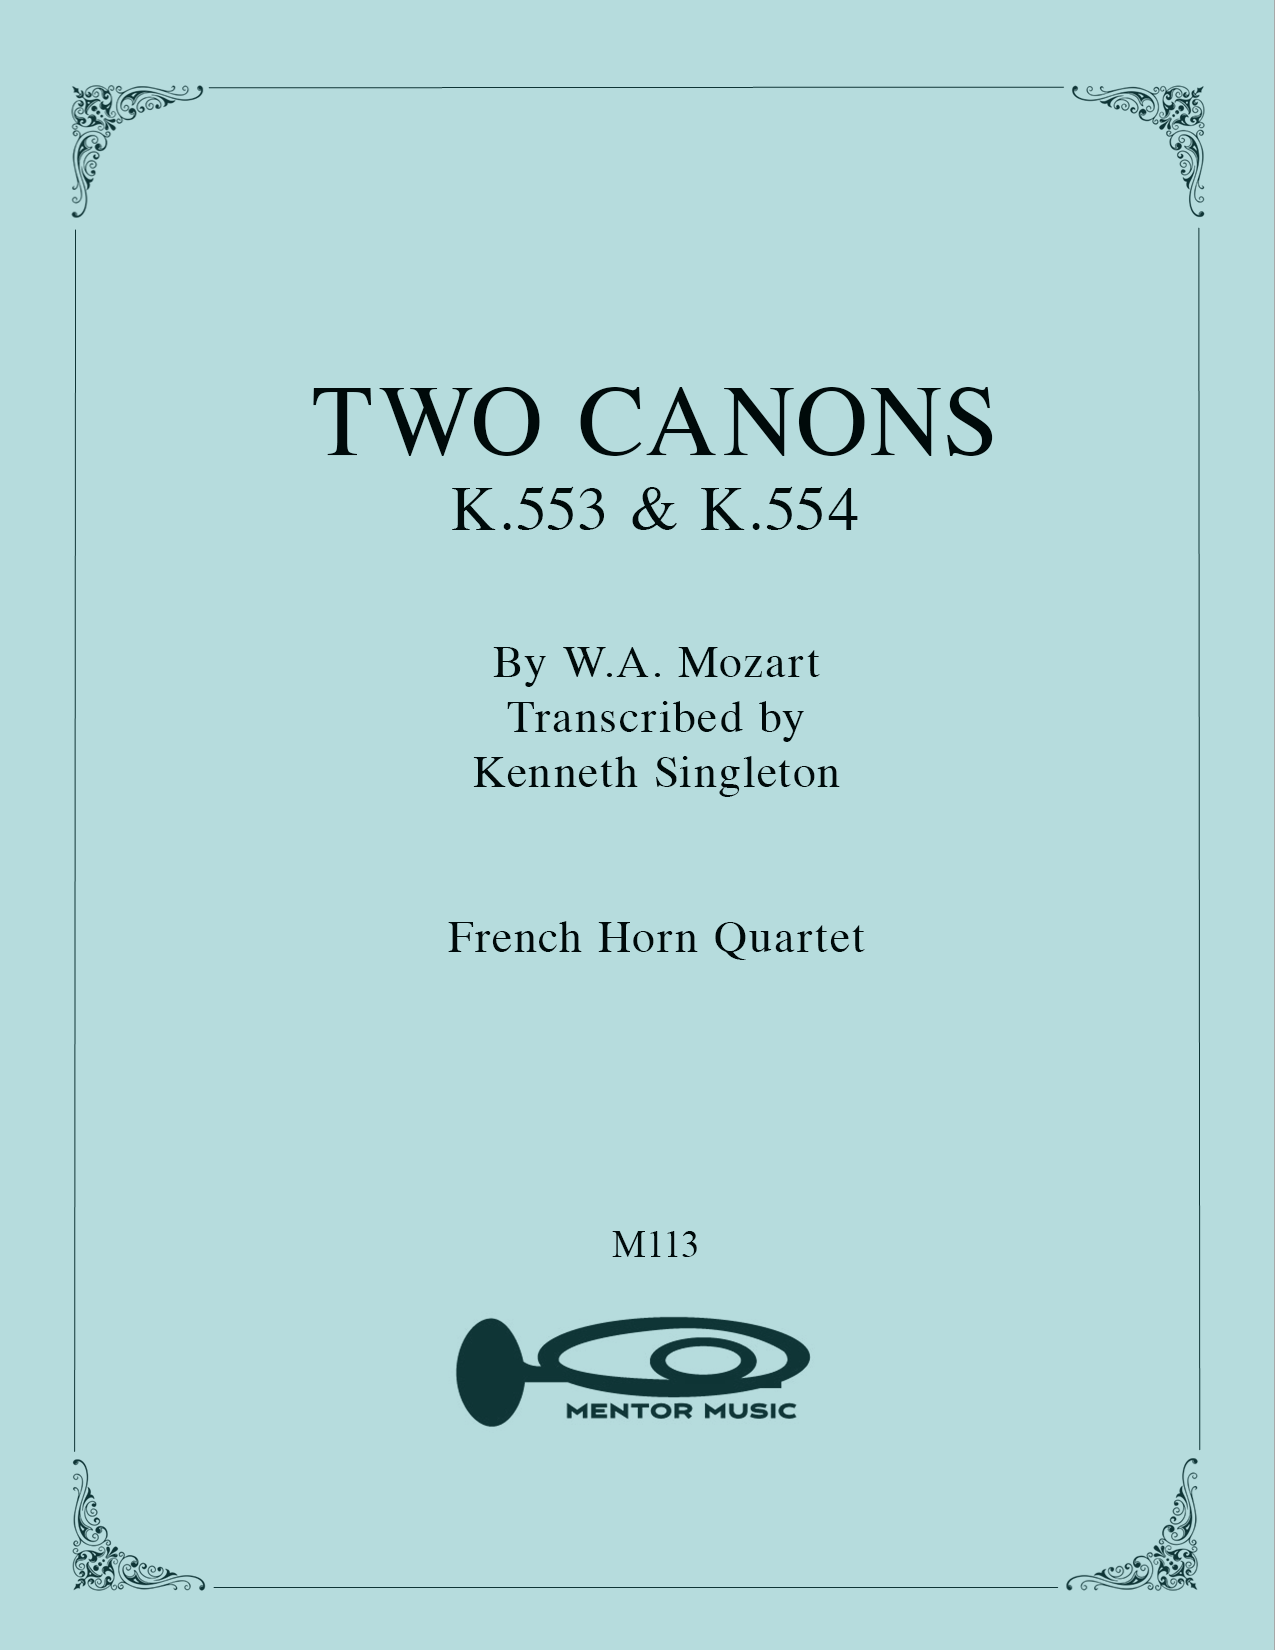 Two Canons - K553 & K554 - for Horn Quartet